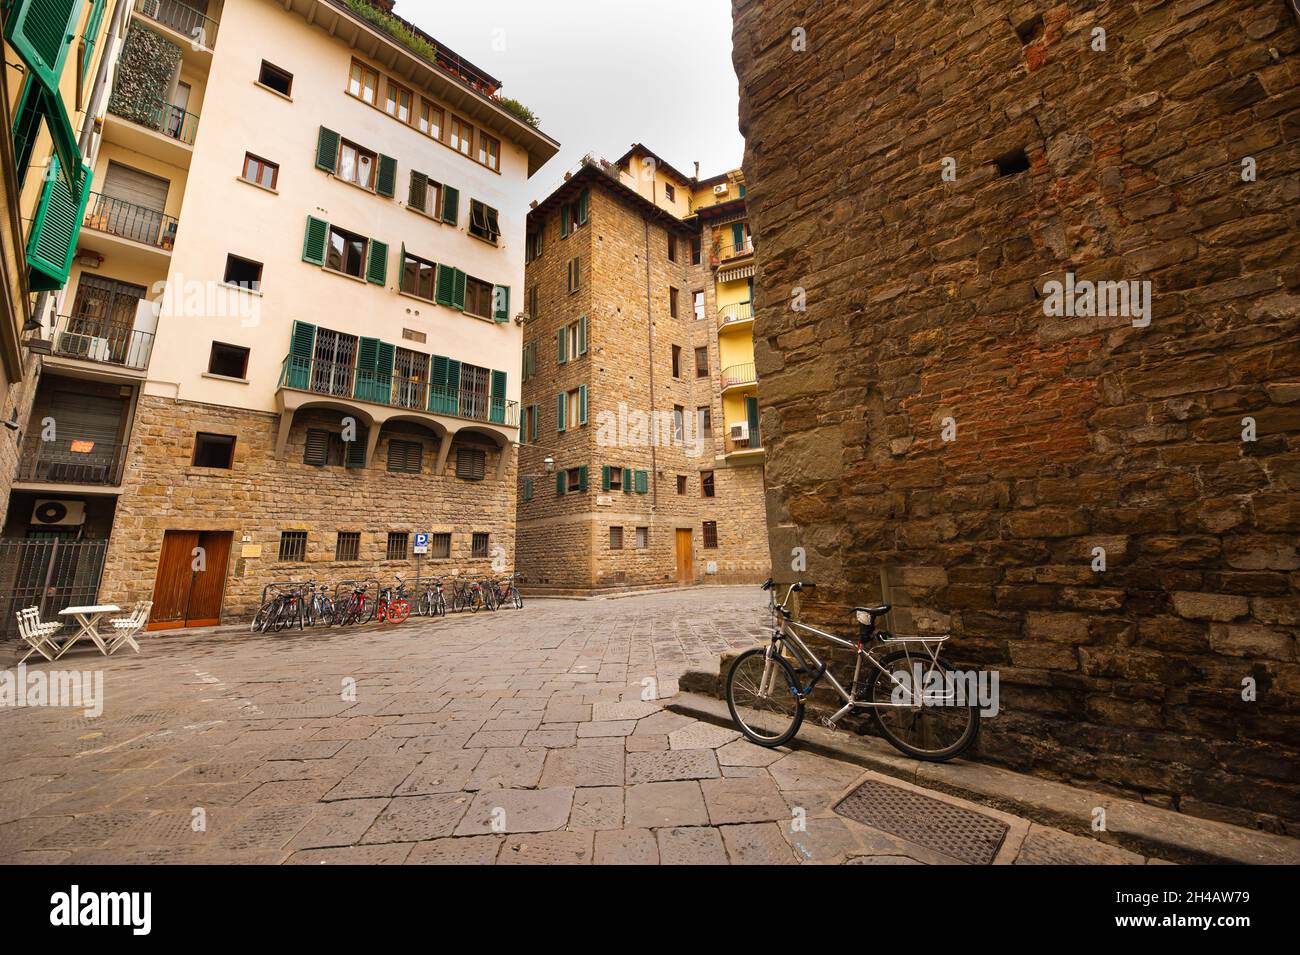 Une des cours du centre historique de Florence, Italie.Vue de dessous.Toscane. Banque D'Images